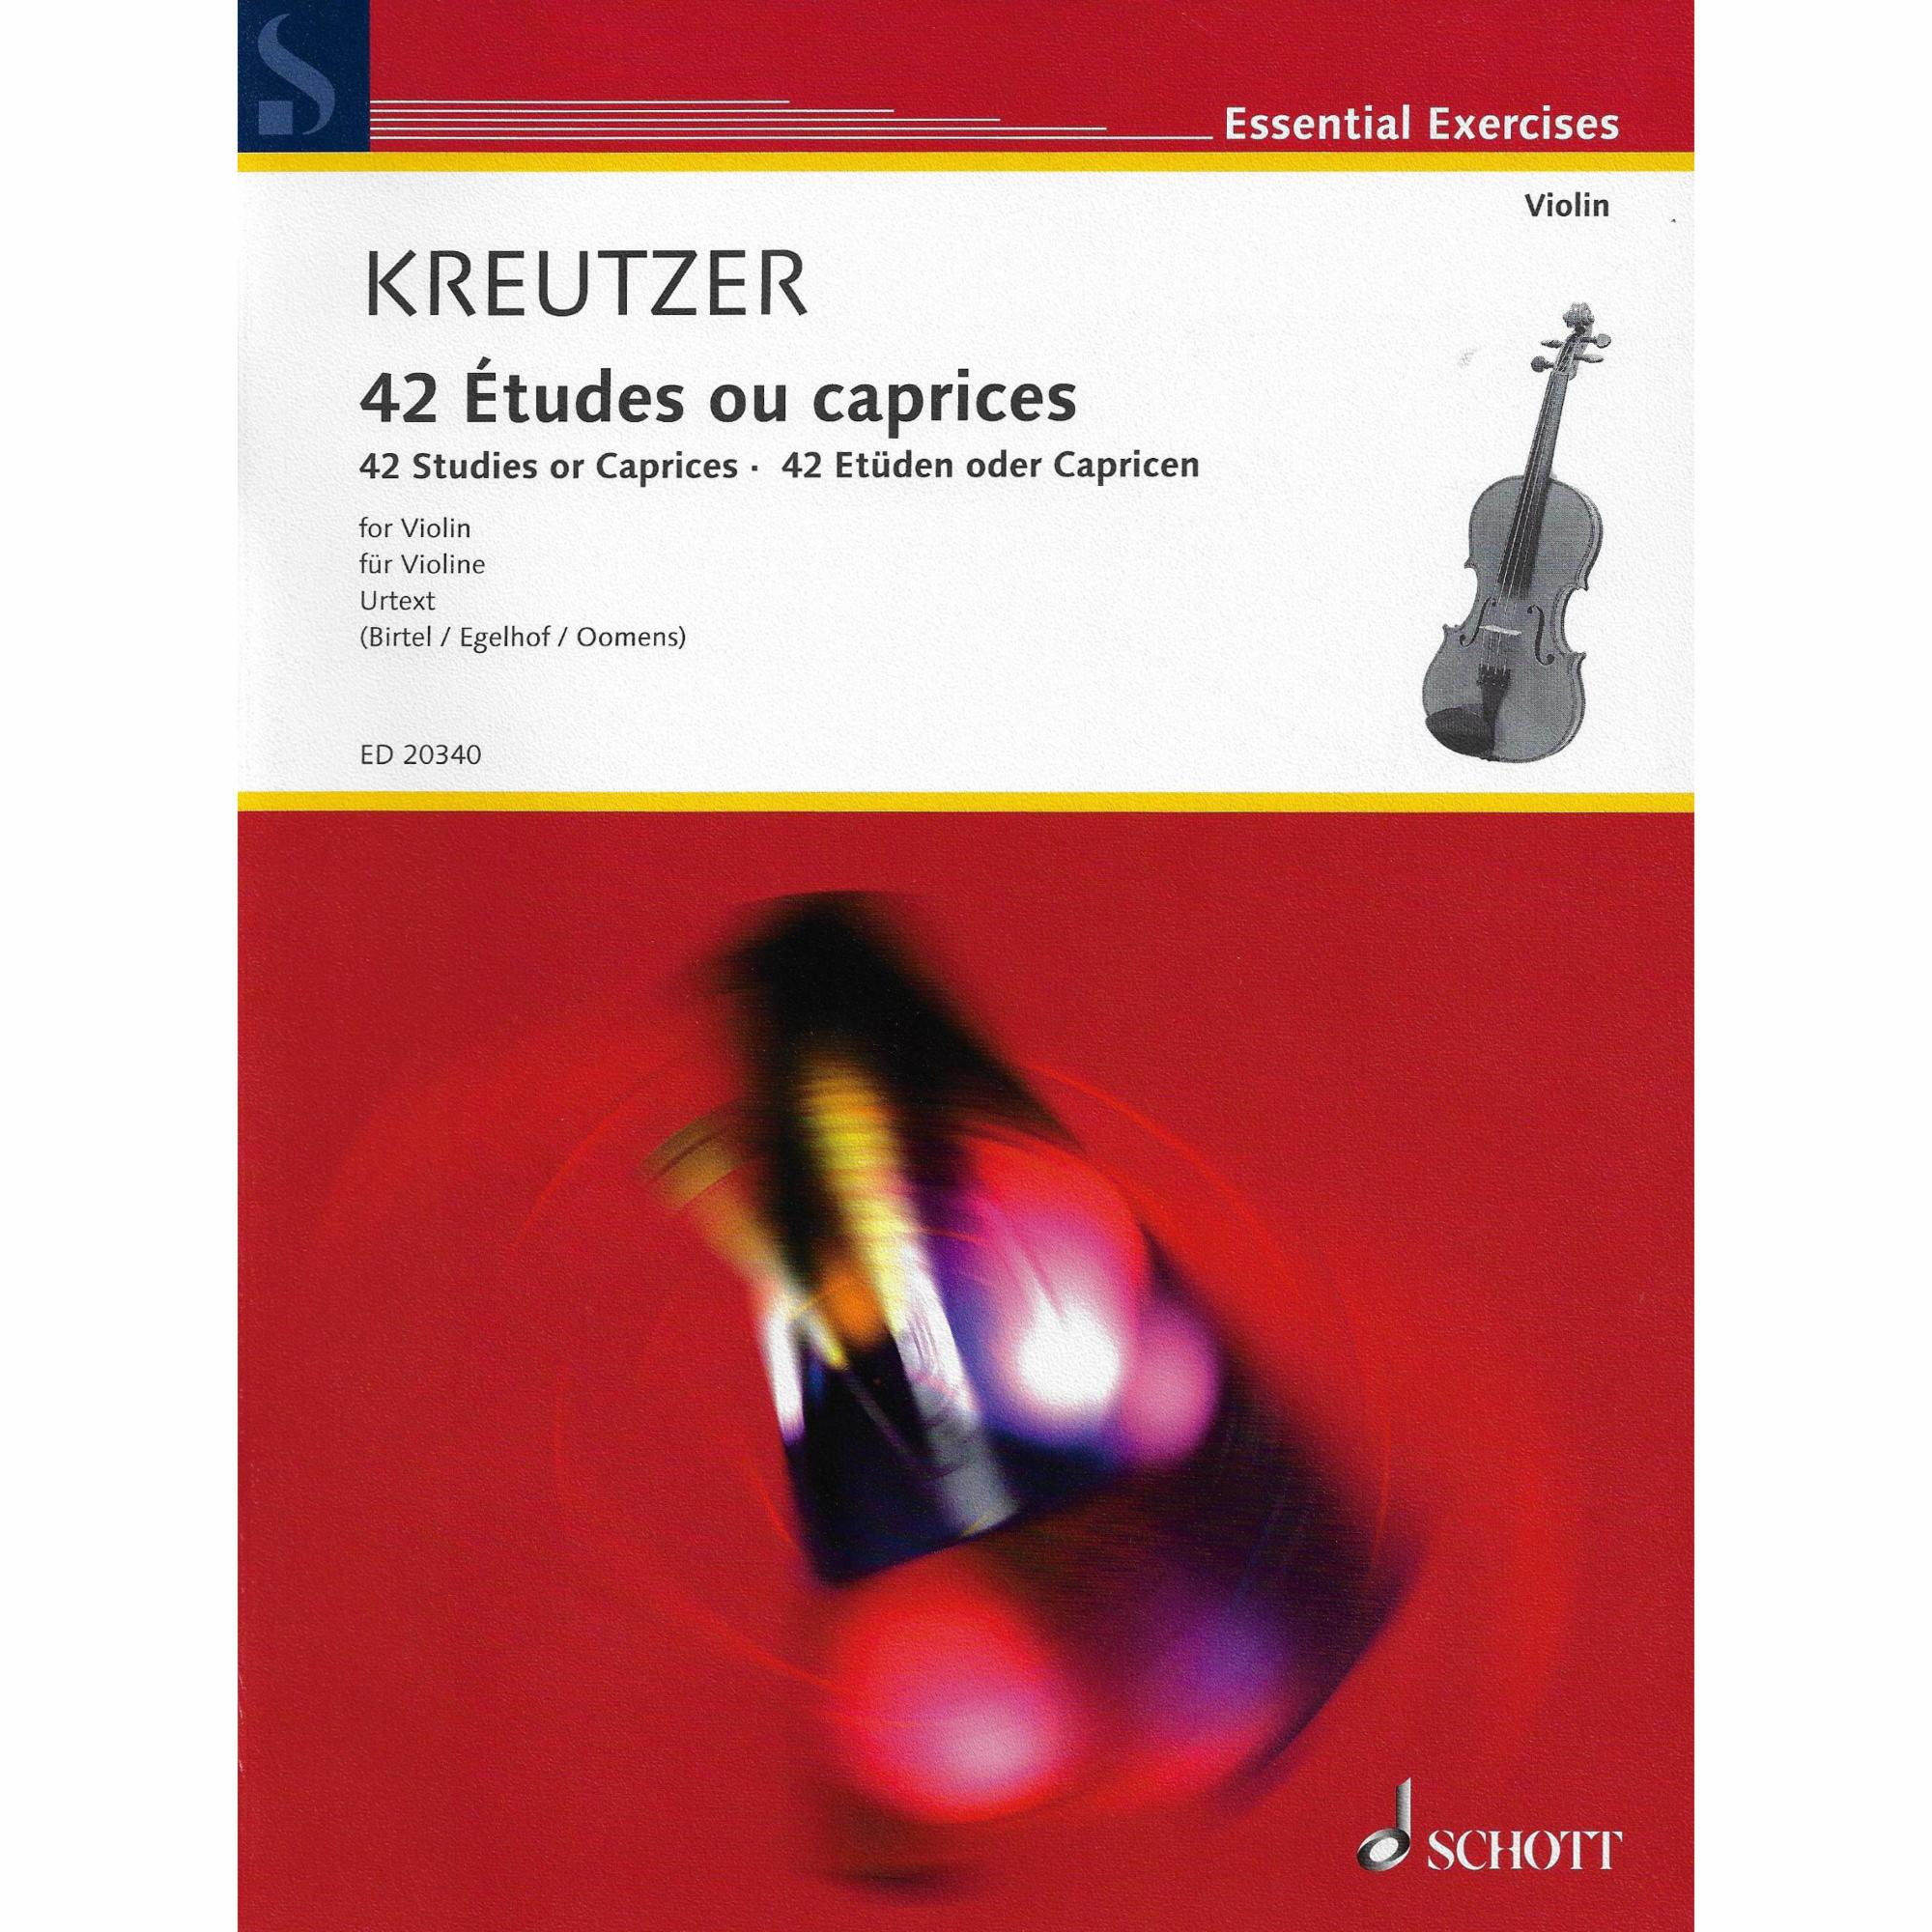 Kreutzer -- 42 Studies or Caprices for Violin